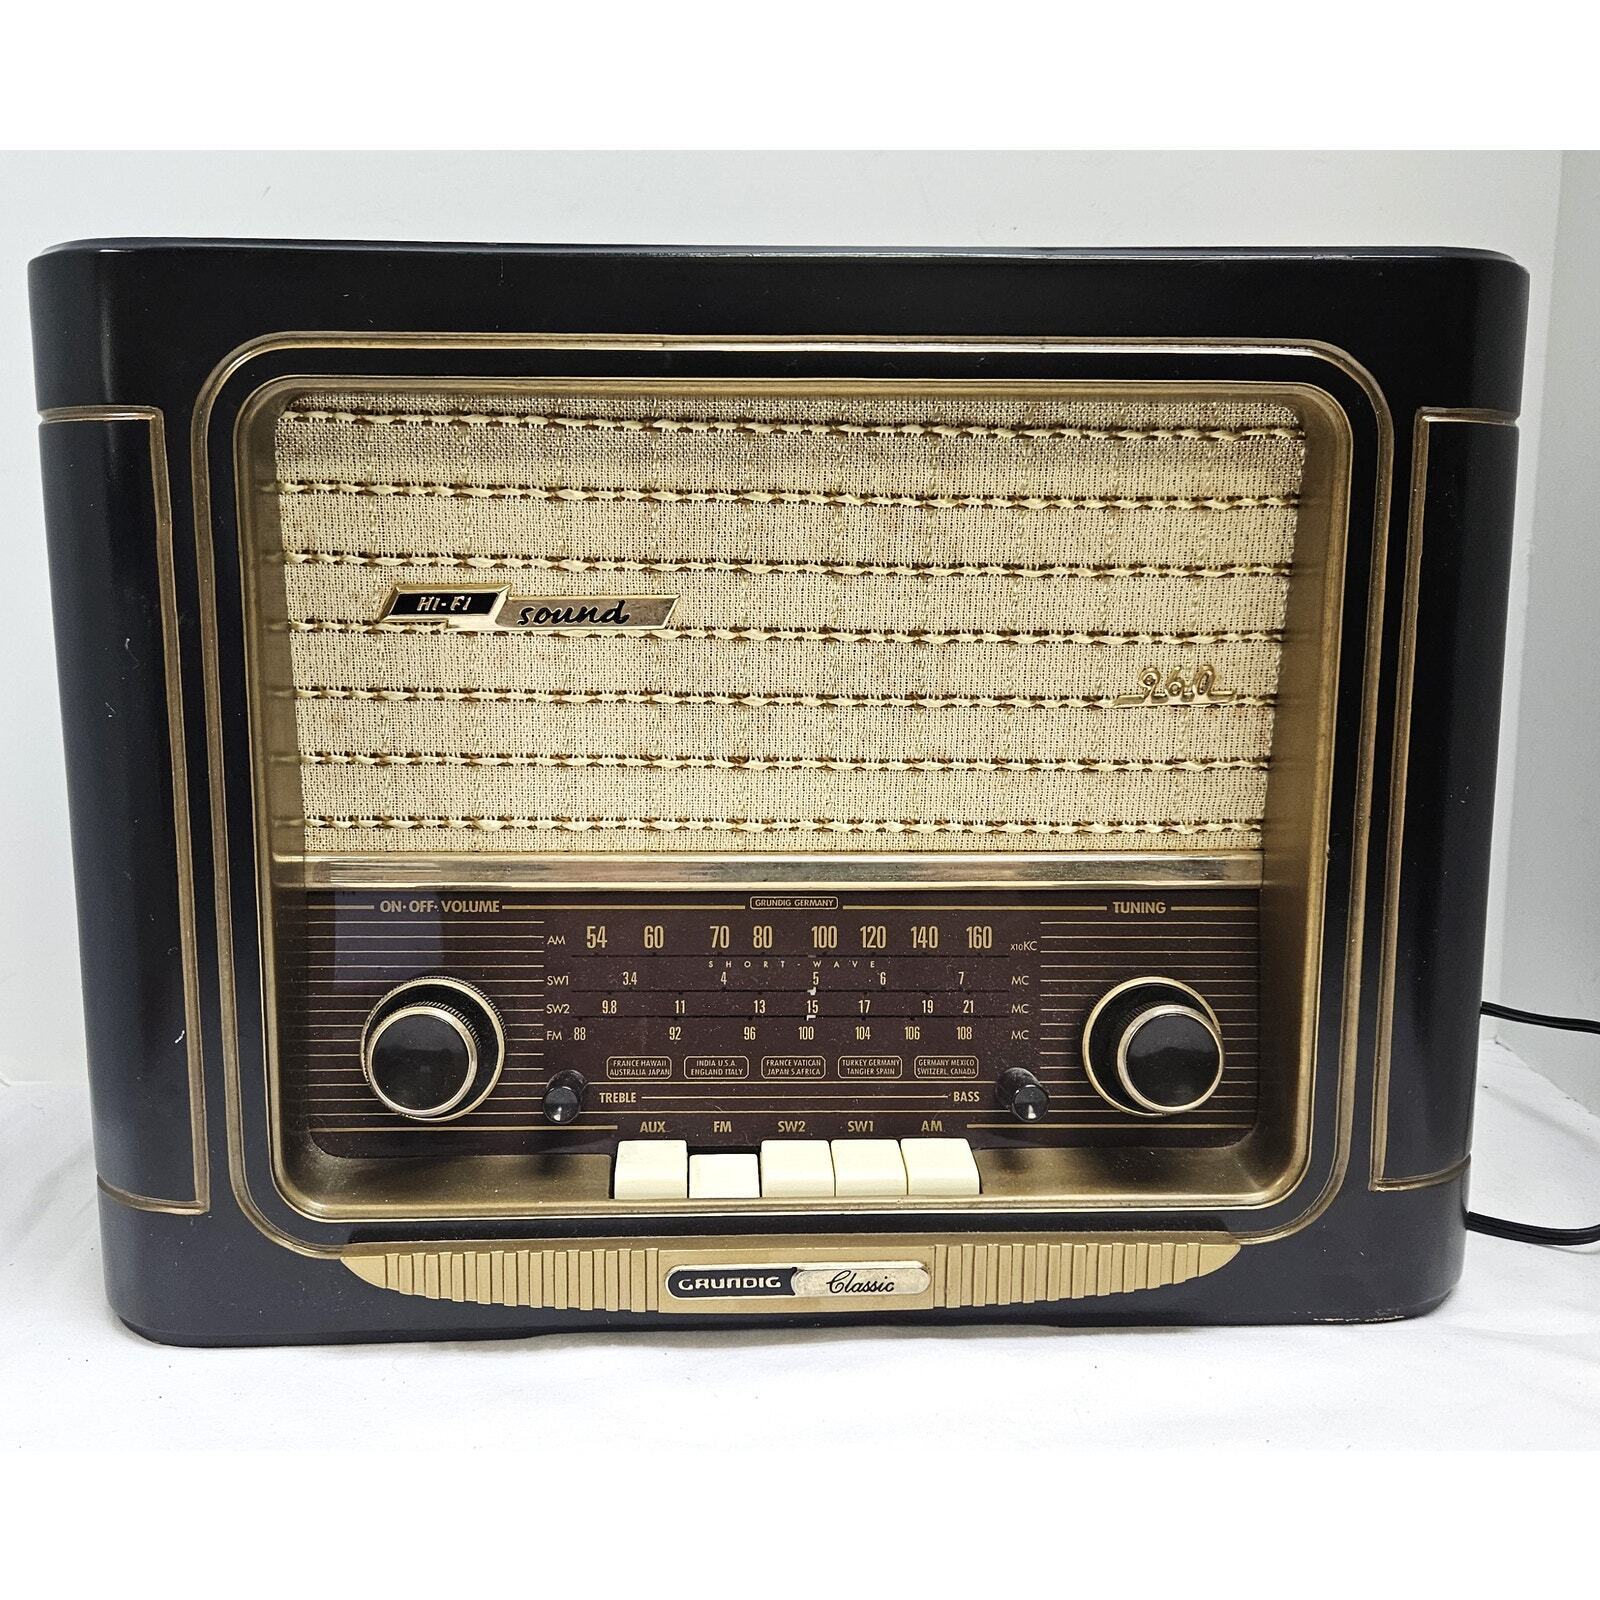 Working Grundig Classic Radio Model 960 HI-FI AM/FM 